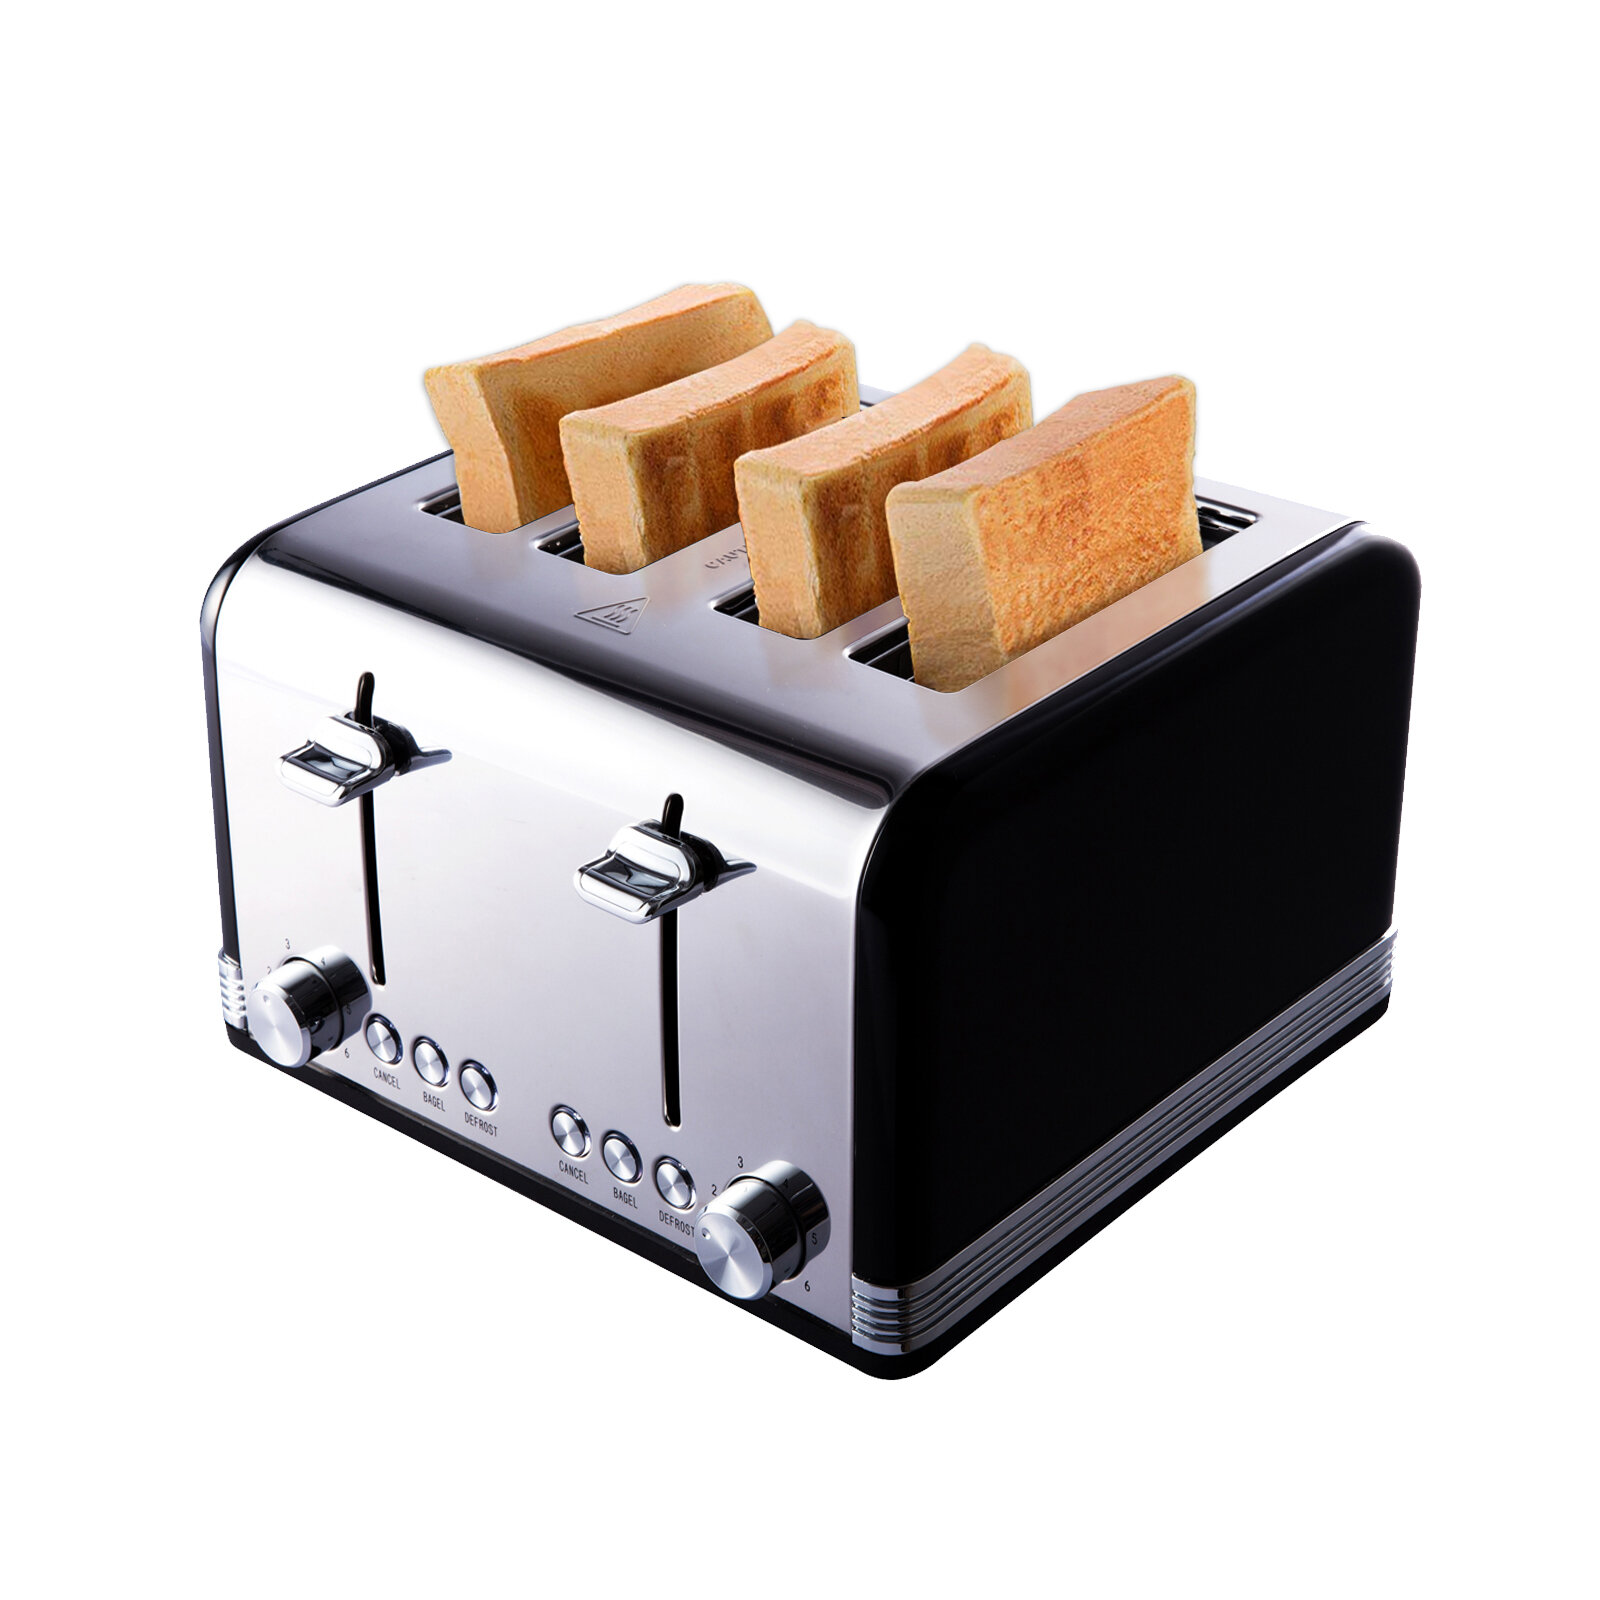 https://assets.wfcdn.com/im/57087233/compr-r85/1704/170415063/gohyo-4-slice-toaster.jpg